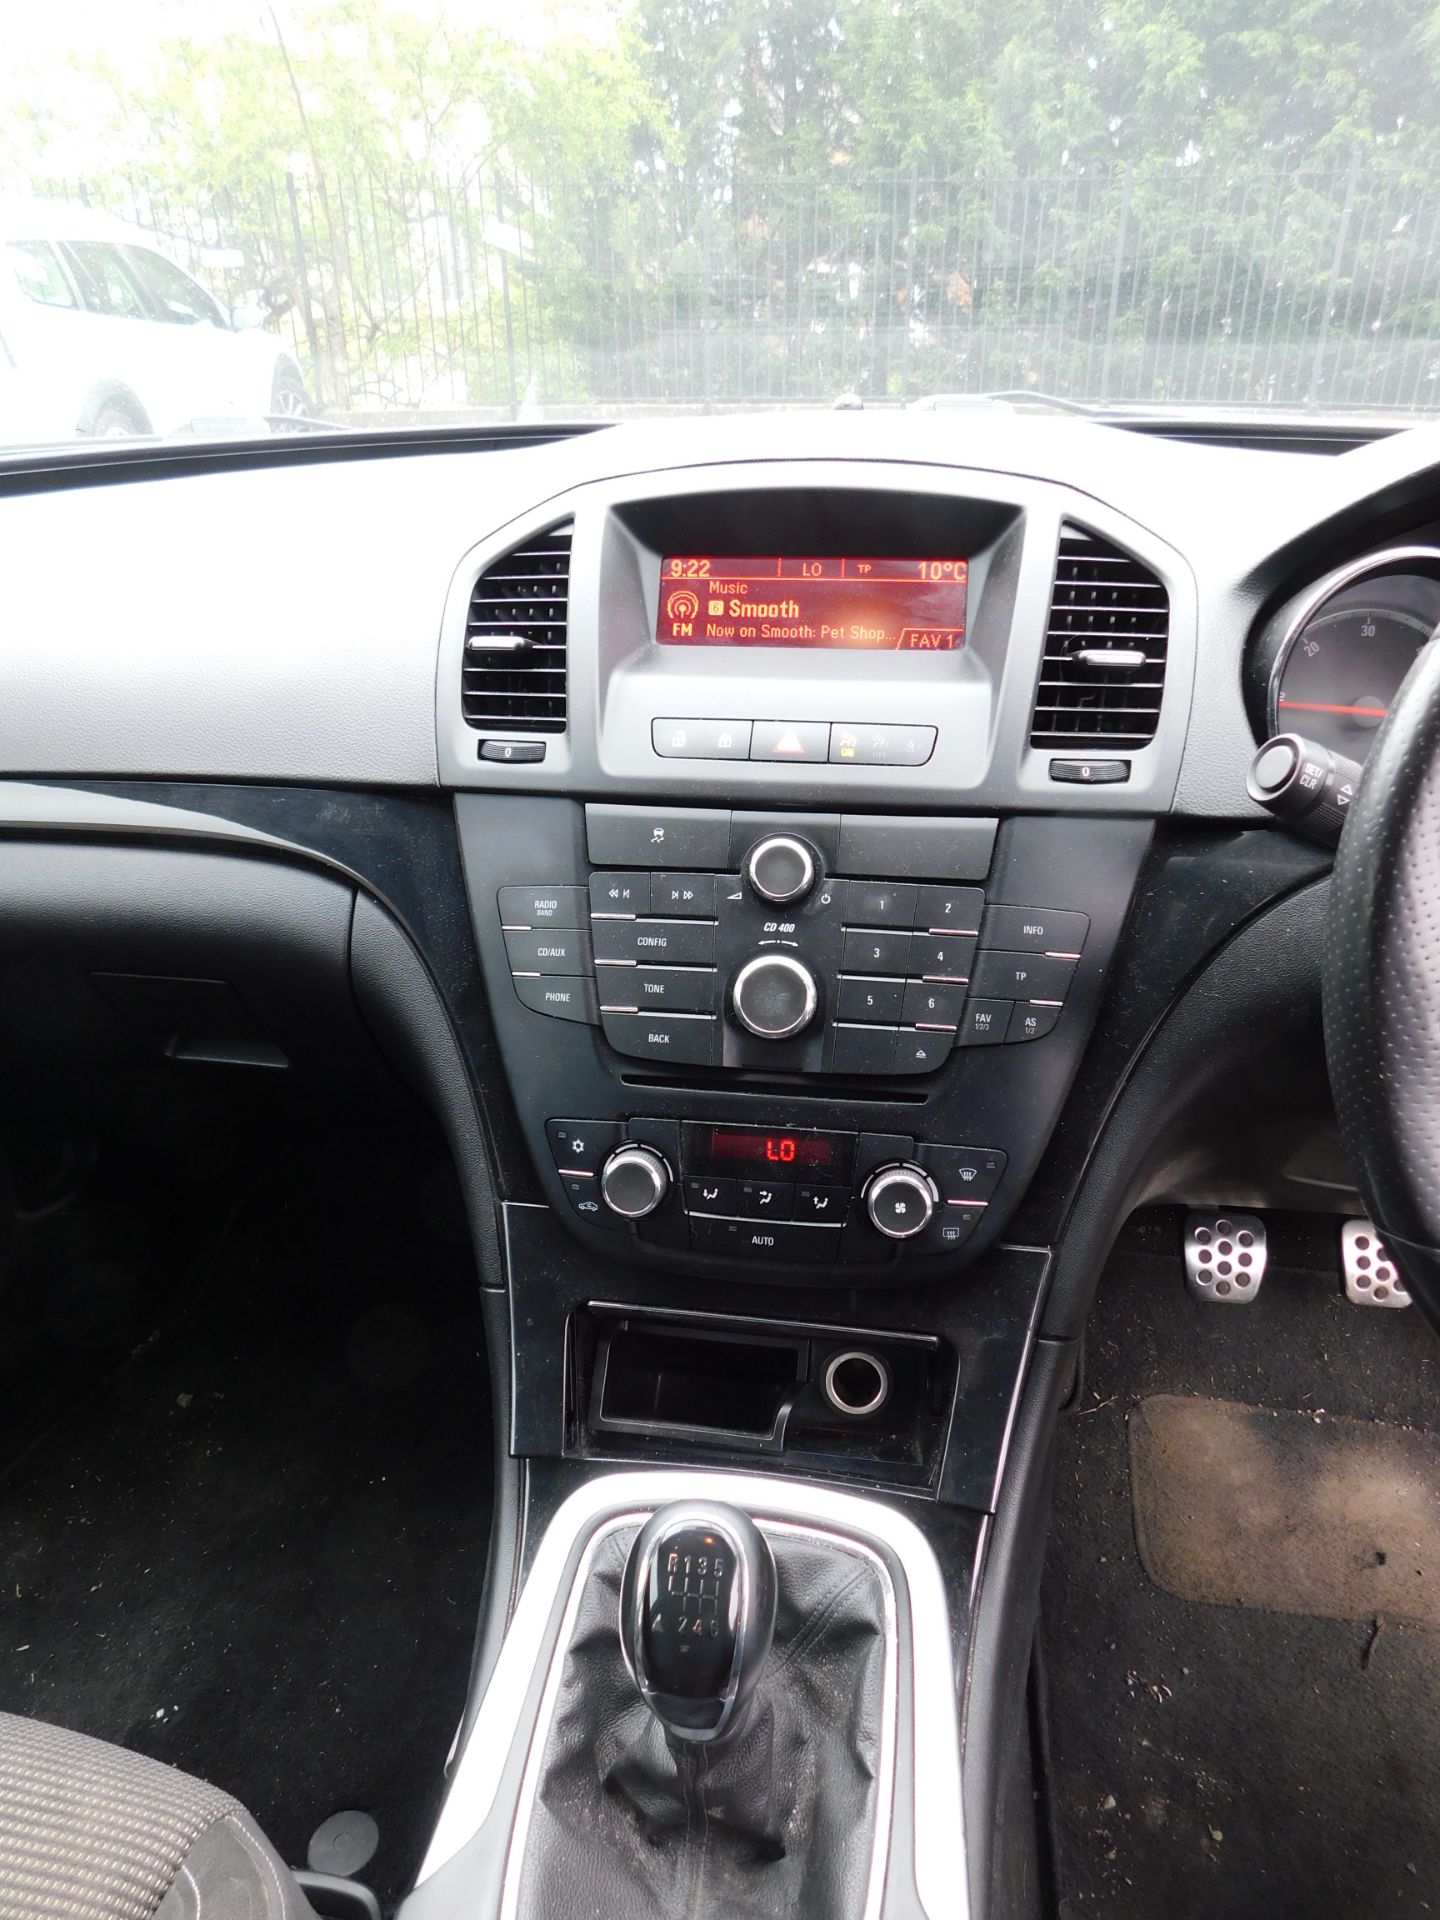 Vauxhall Insignia SRI 2.0CDTI five door hatchback, - Image 14 of 16